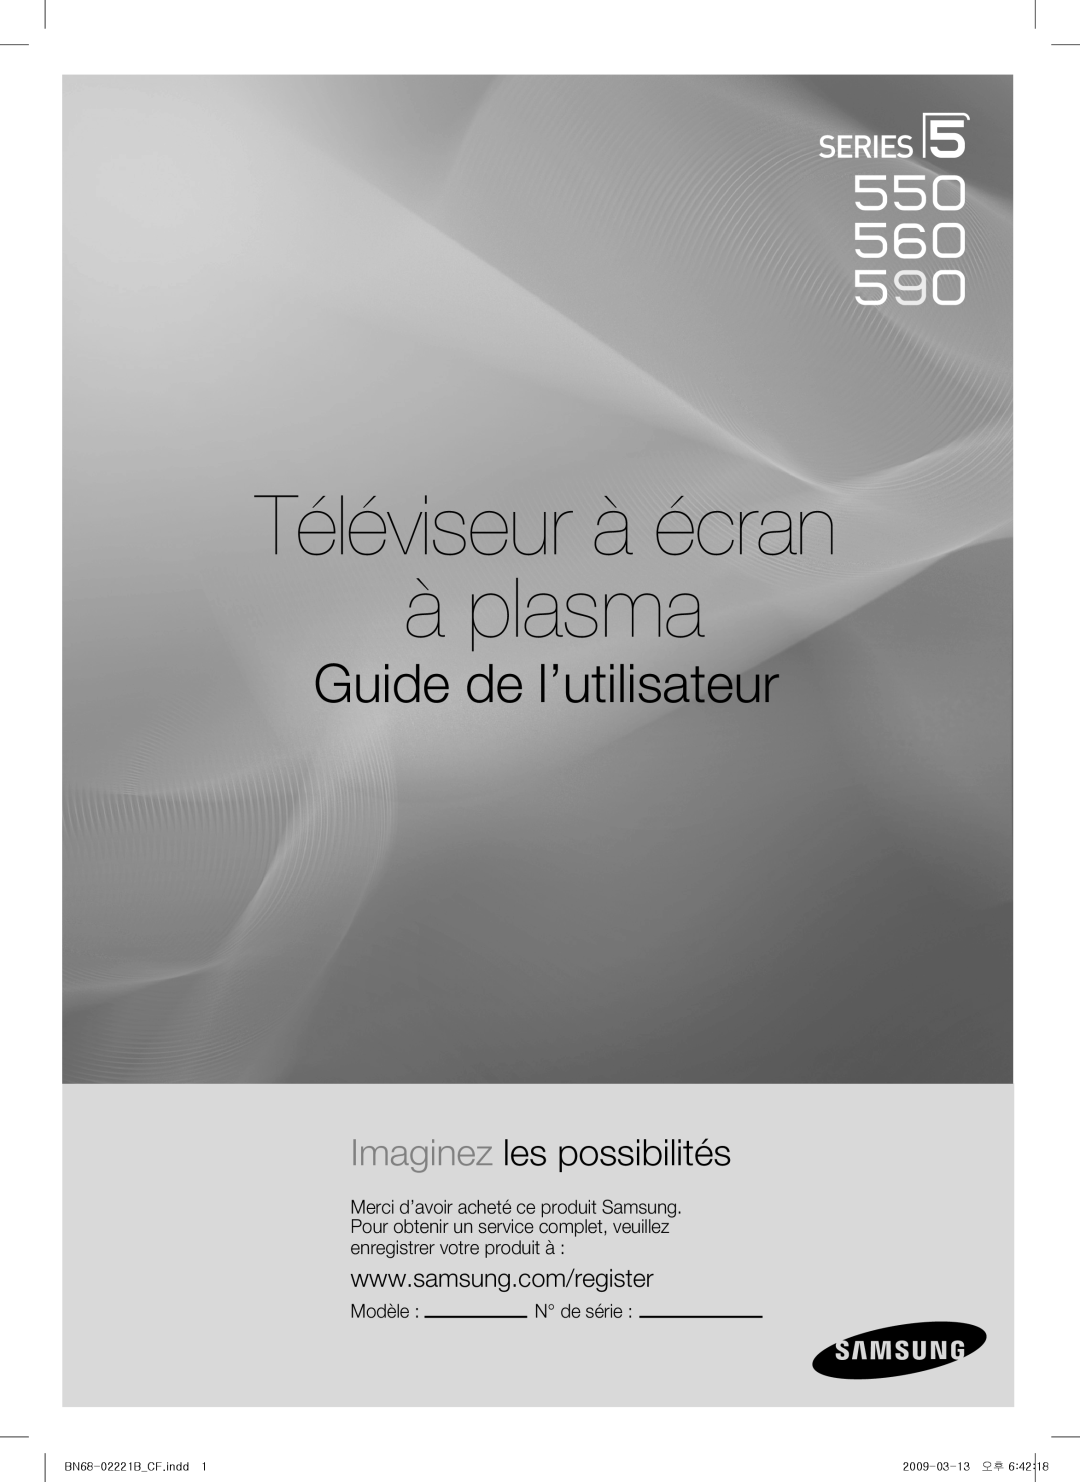 Samsung PN50B550TF Guide de l’utilisateur, Imaginez les possibilités, Téléviseur à écran à plasma, Modèle, N de série 